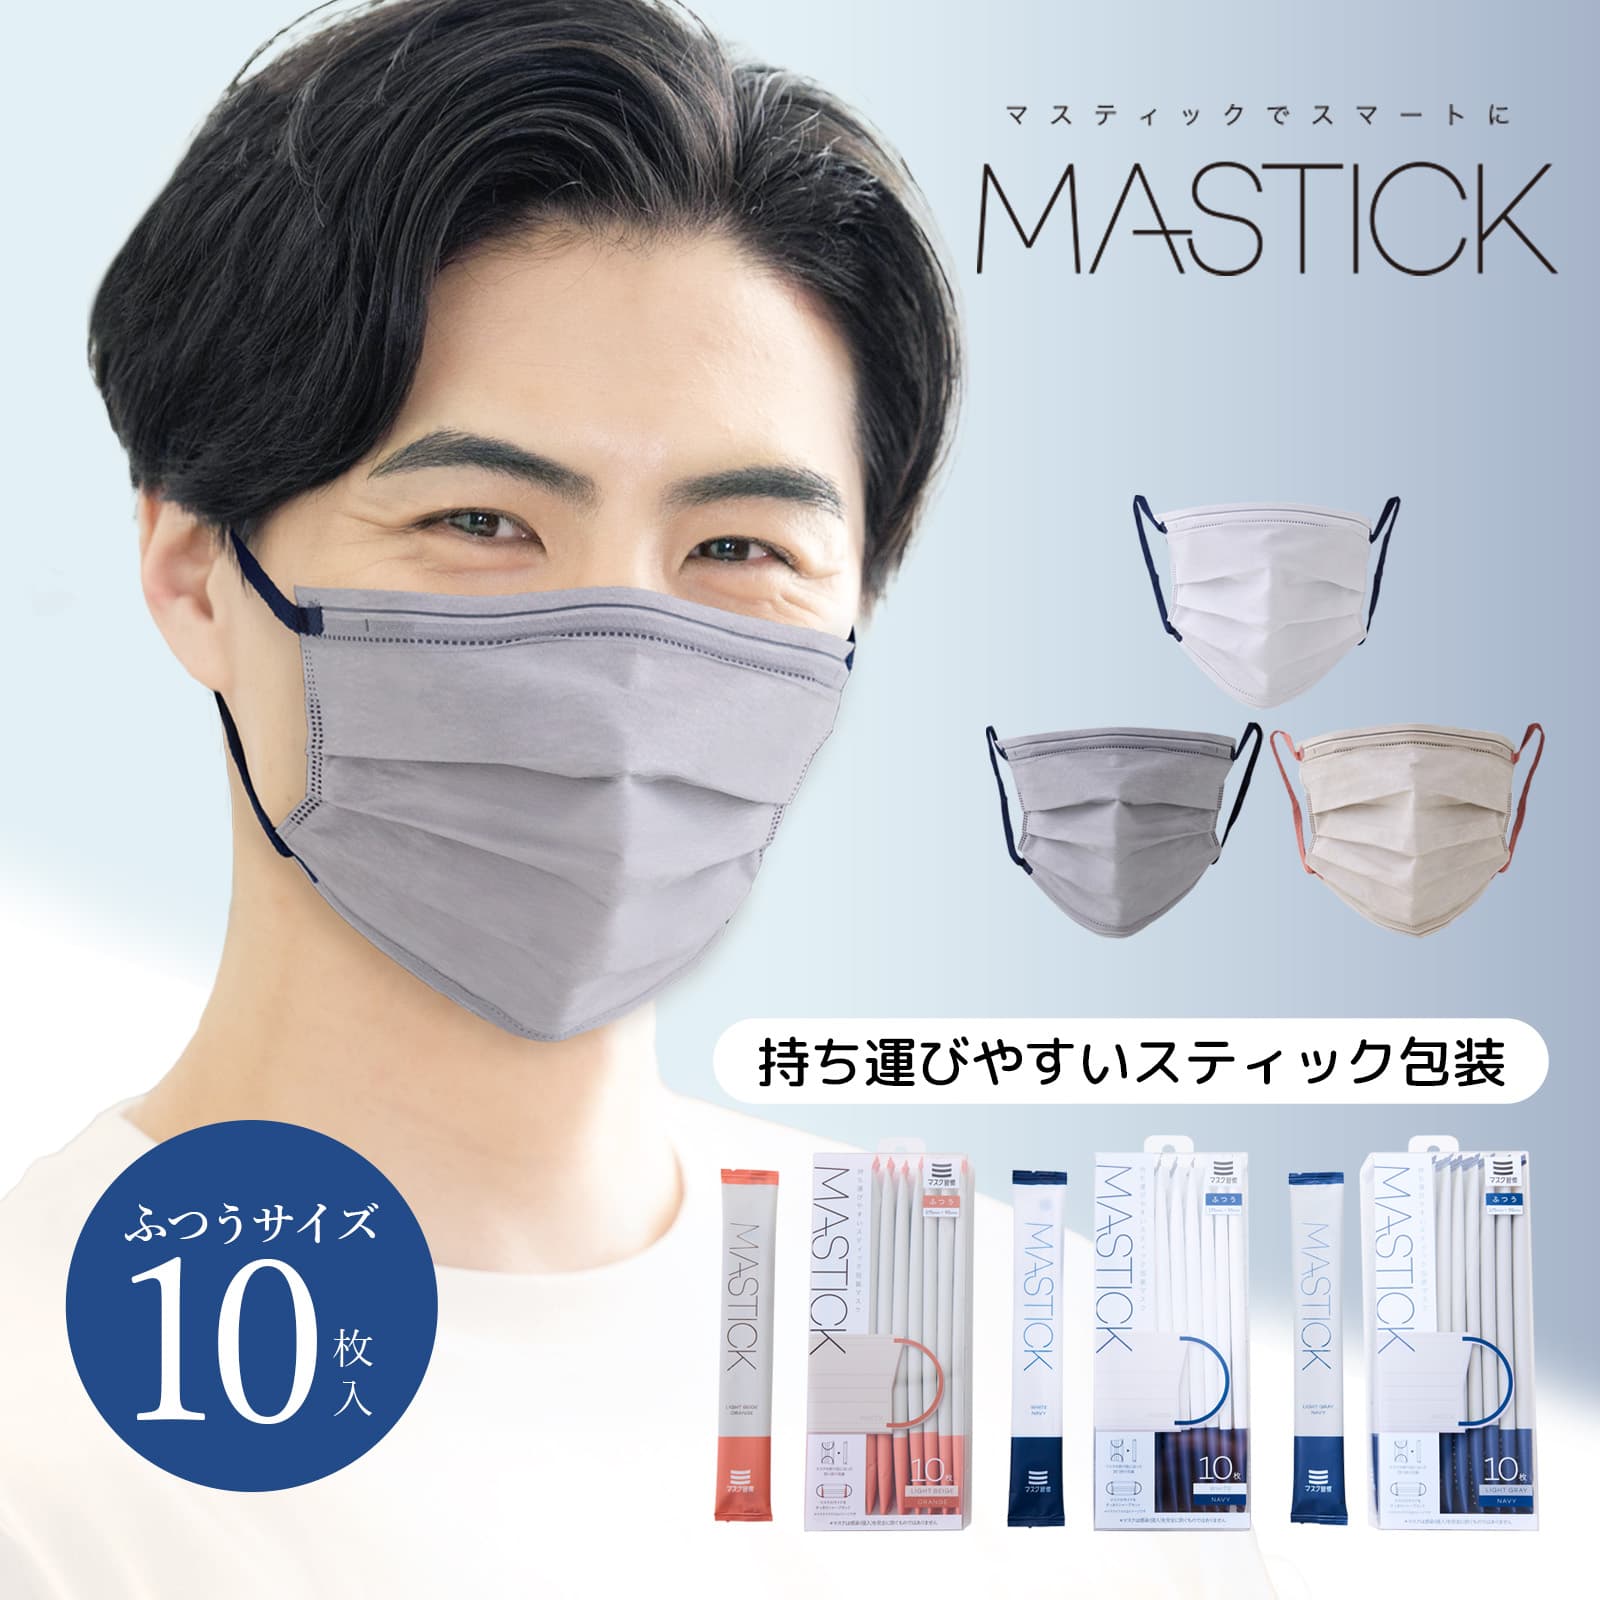 【公式】 マスク 不織布 バイカラー MASTICK 10枚